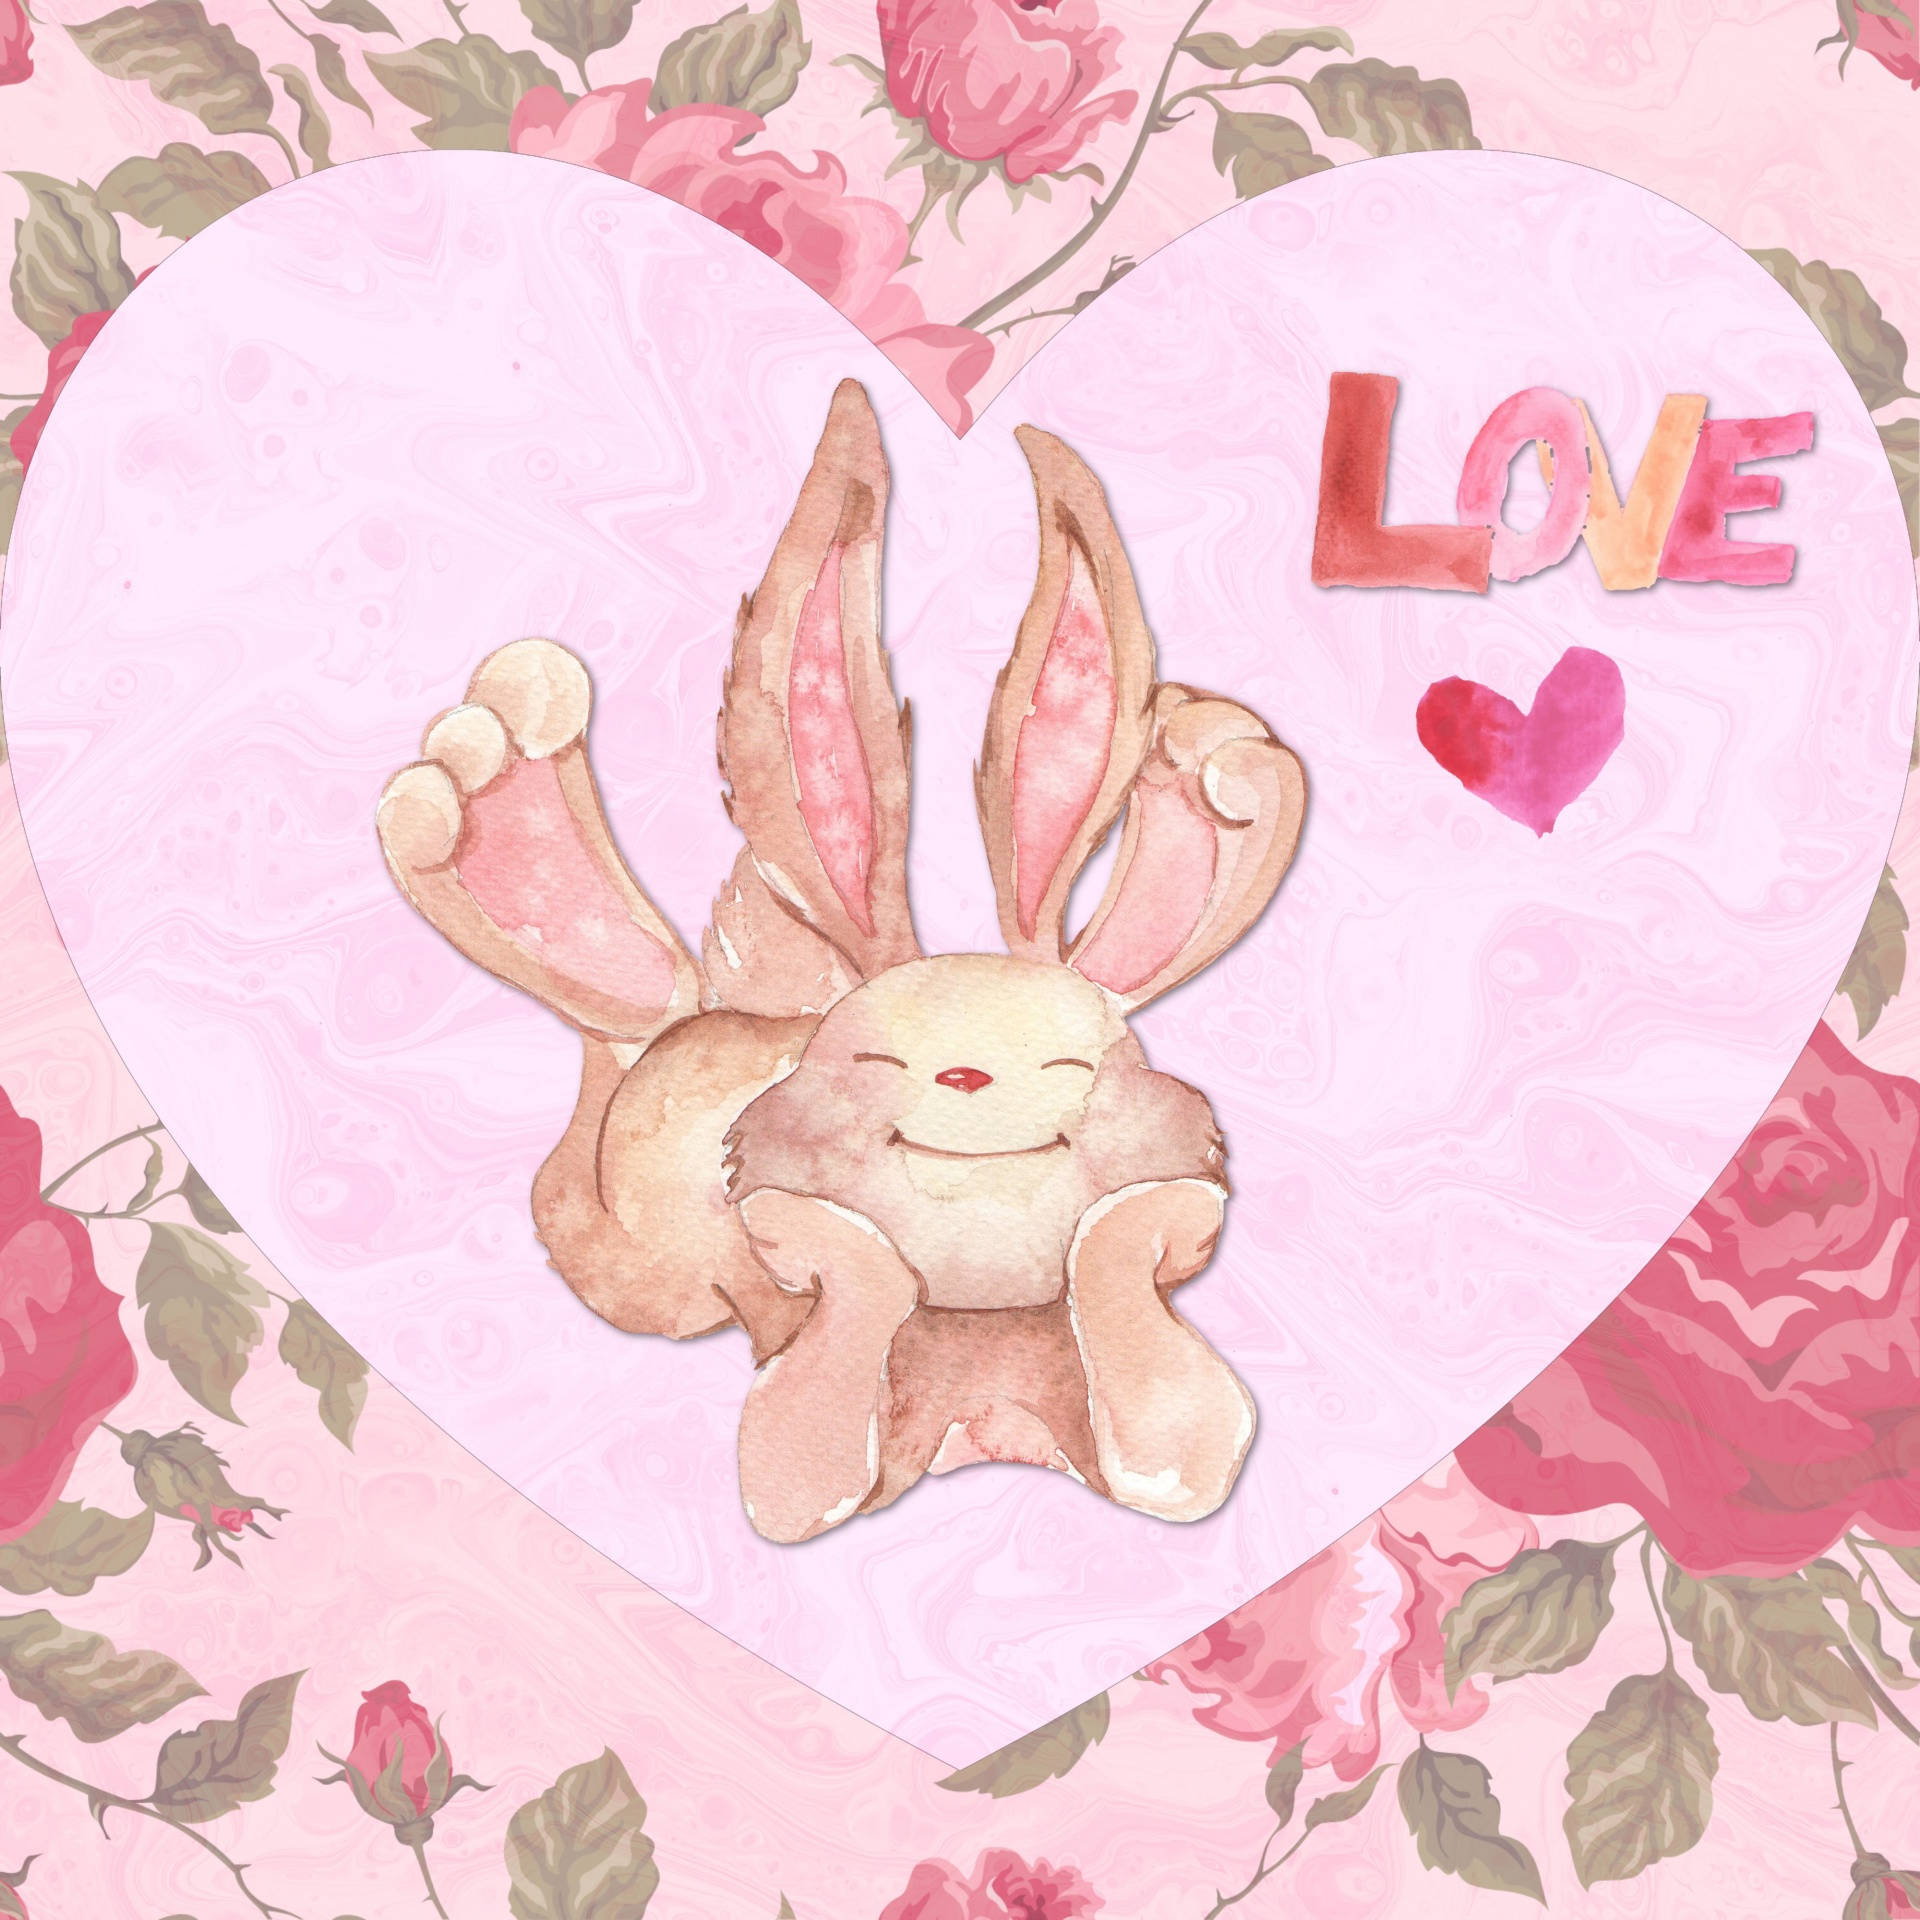 Artede Amor De Conejitos De San Valentín Fondo de pantalla